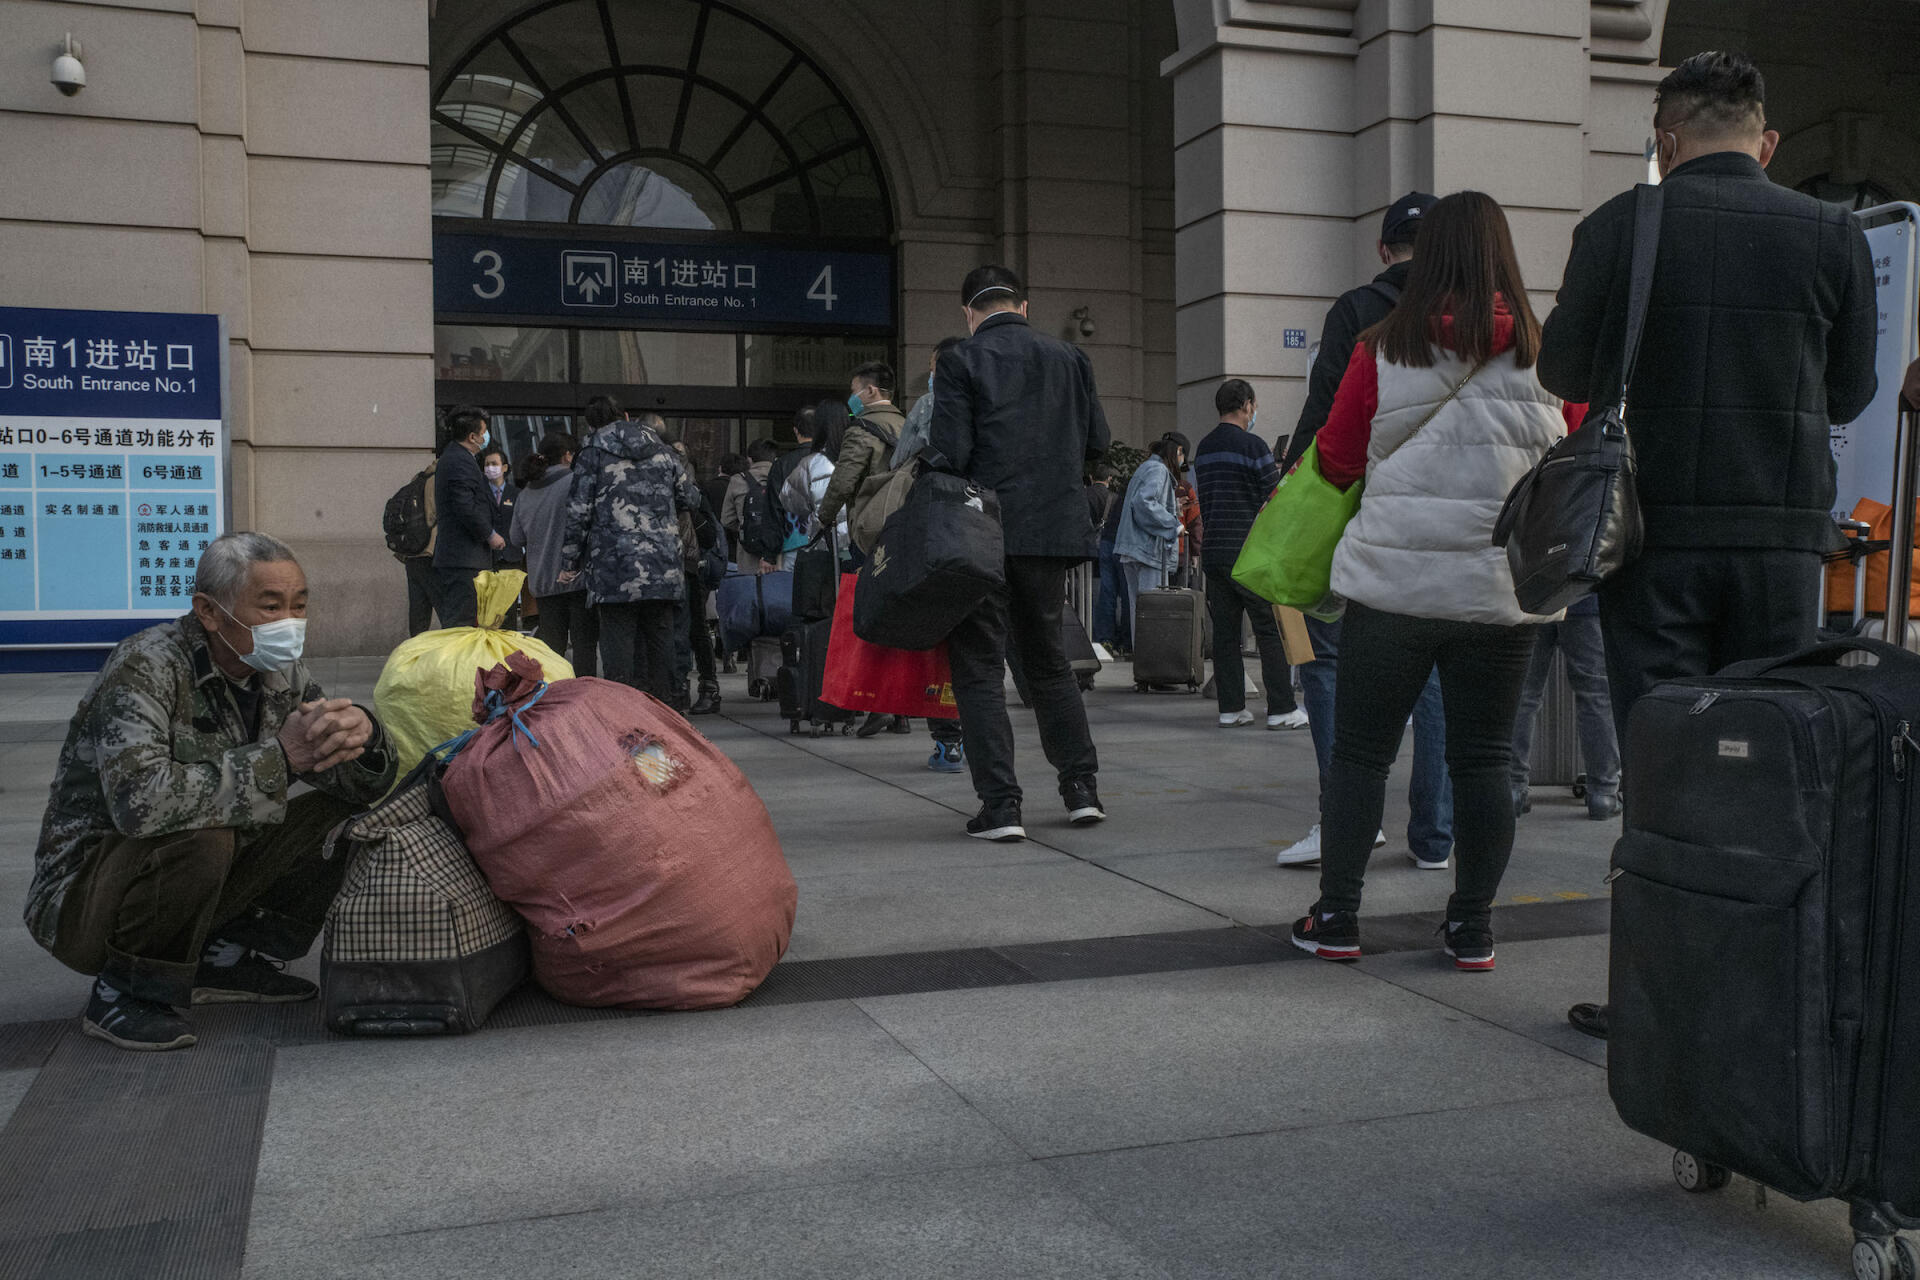 Un voyageur attend avec ses bagages pendant que d’autres rentrent dans la gare, le 8 avril à Wuhan.